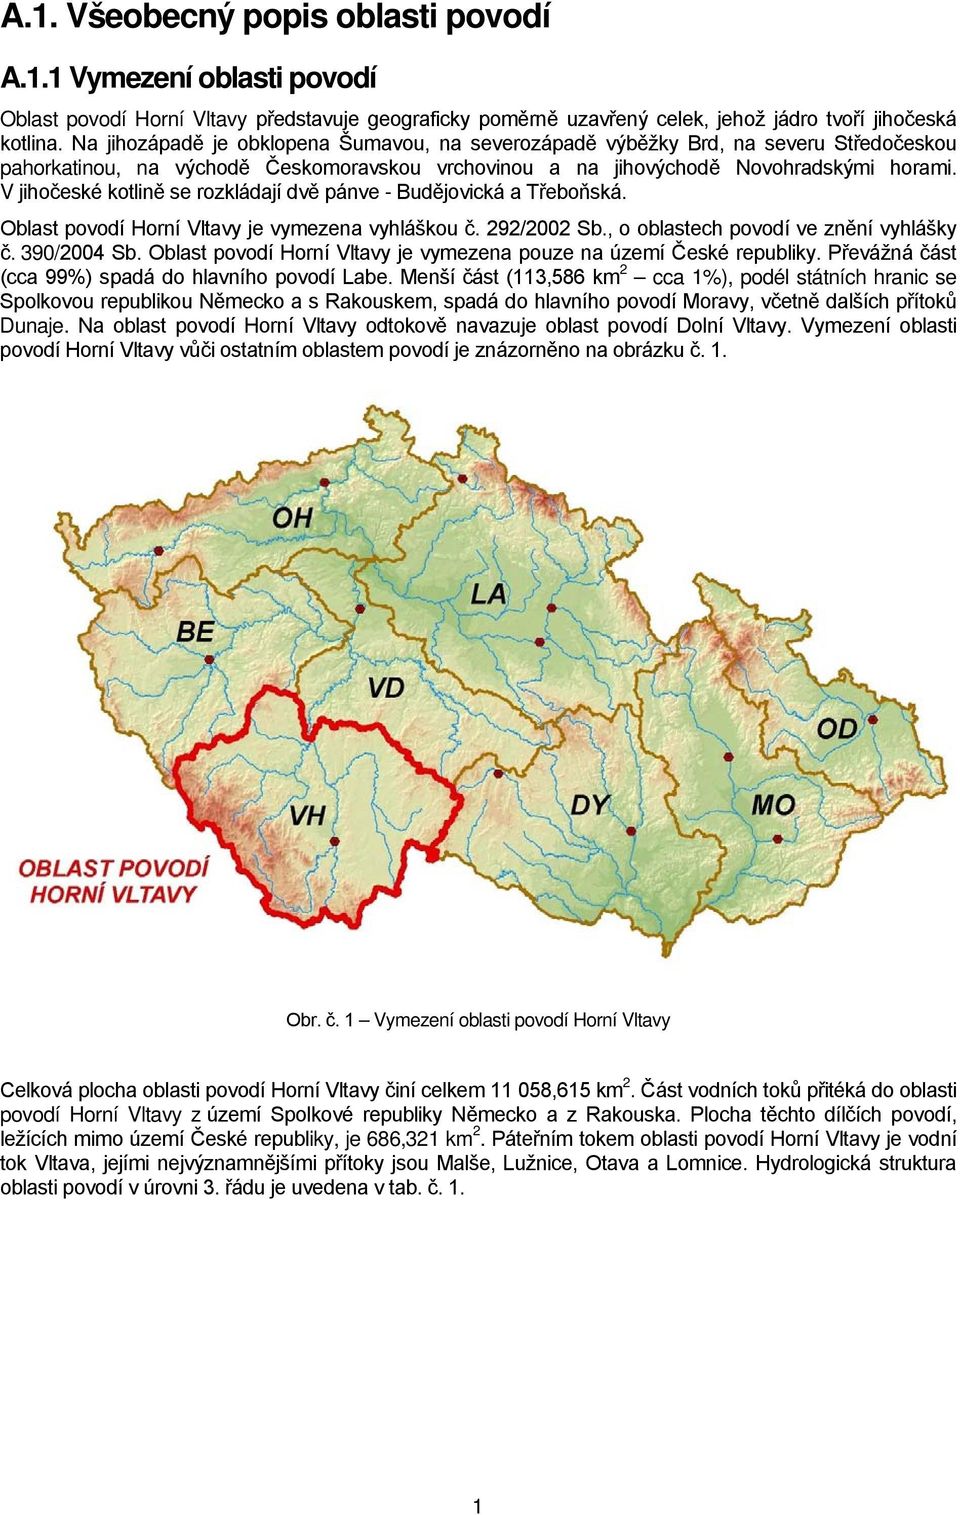 V jihočeské kotlině se rozkládají dvě pánve - Budějovická a Třeboňská. Oblast povodí Horní Vltavy je vymezena vyhláškou č. 292/2002 Sb., o oblastech povodí ve znění vyhlášky č. 390/2004 Sb.